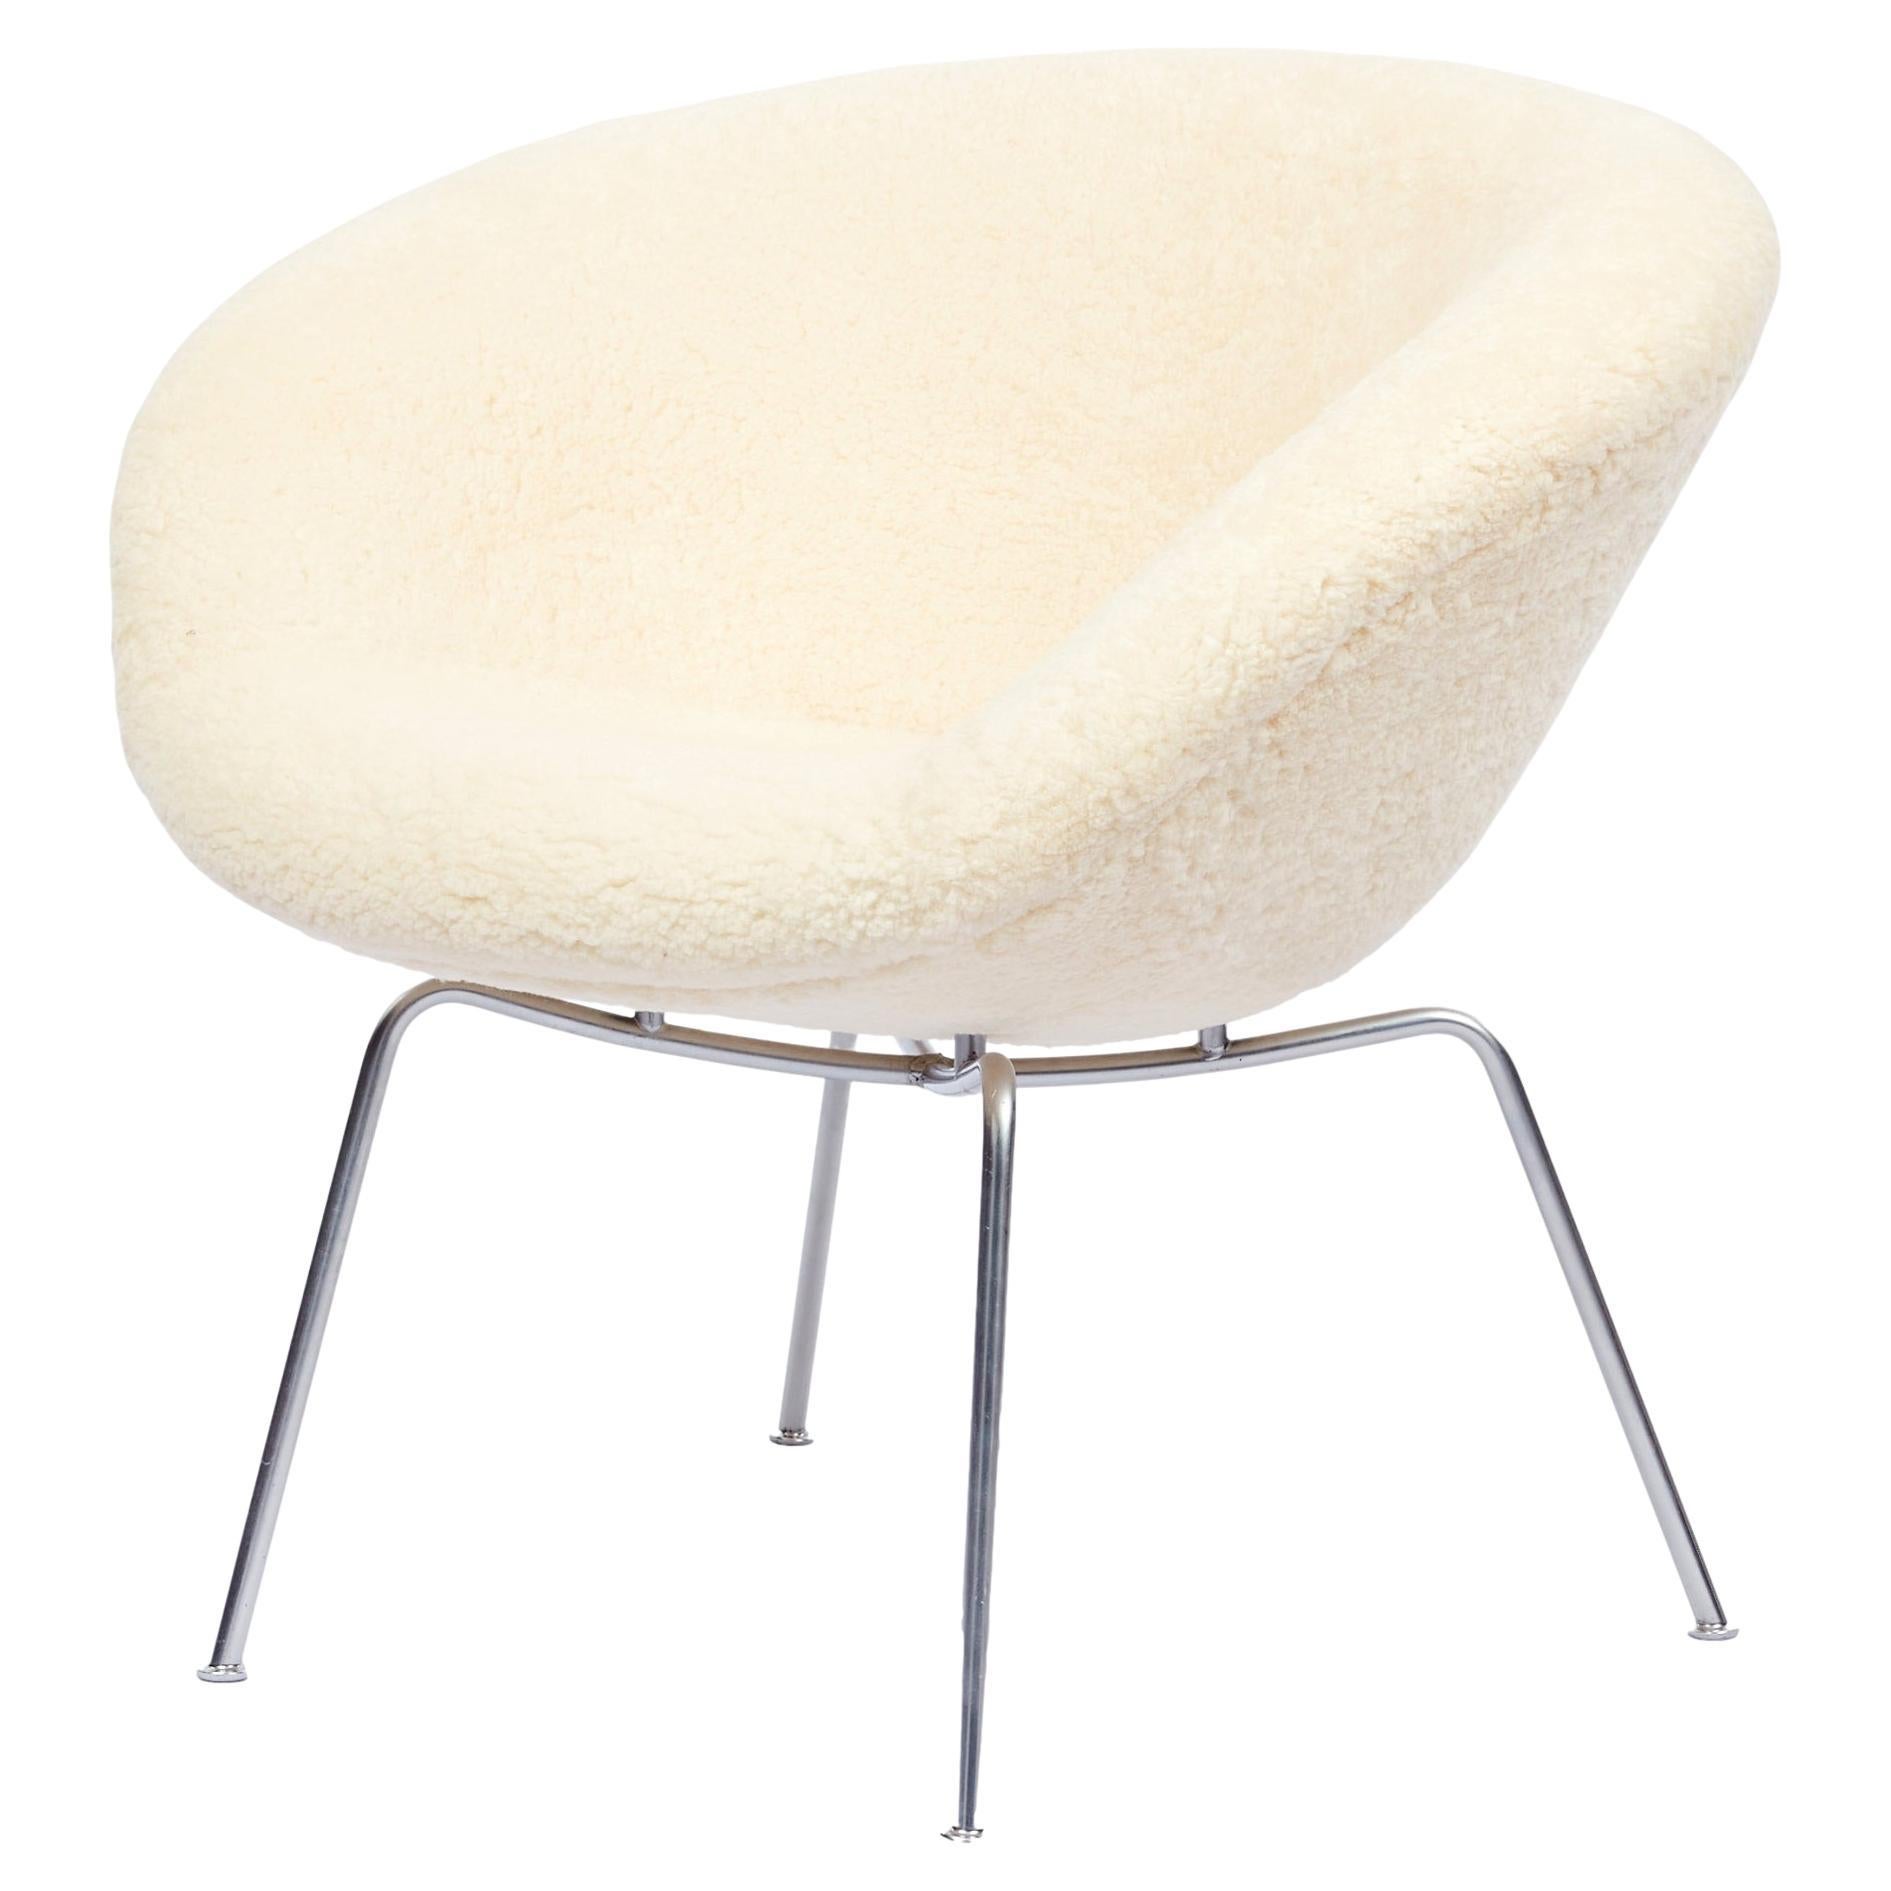 Arne Jacobsen Pot Chair Upholstered in Sheepskin For Sale